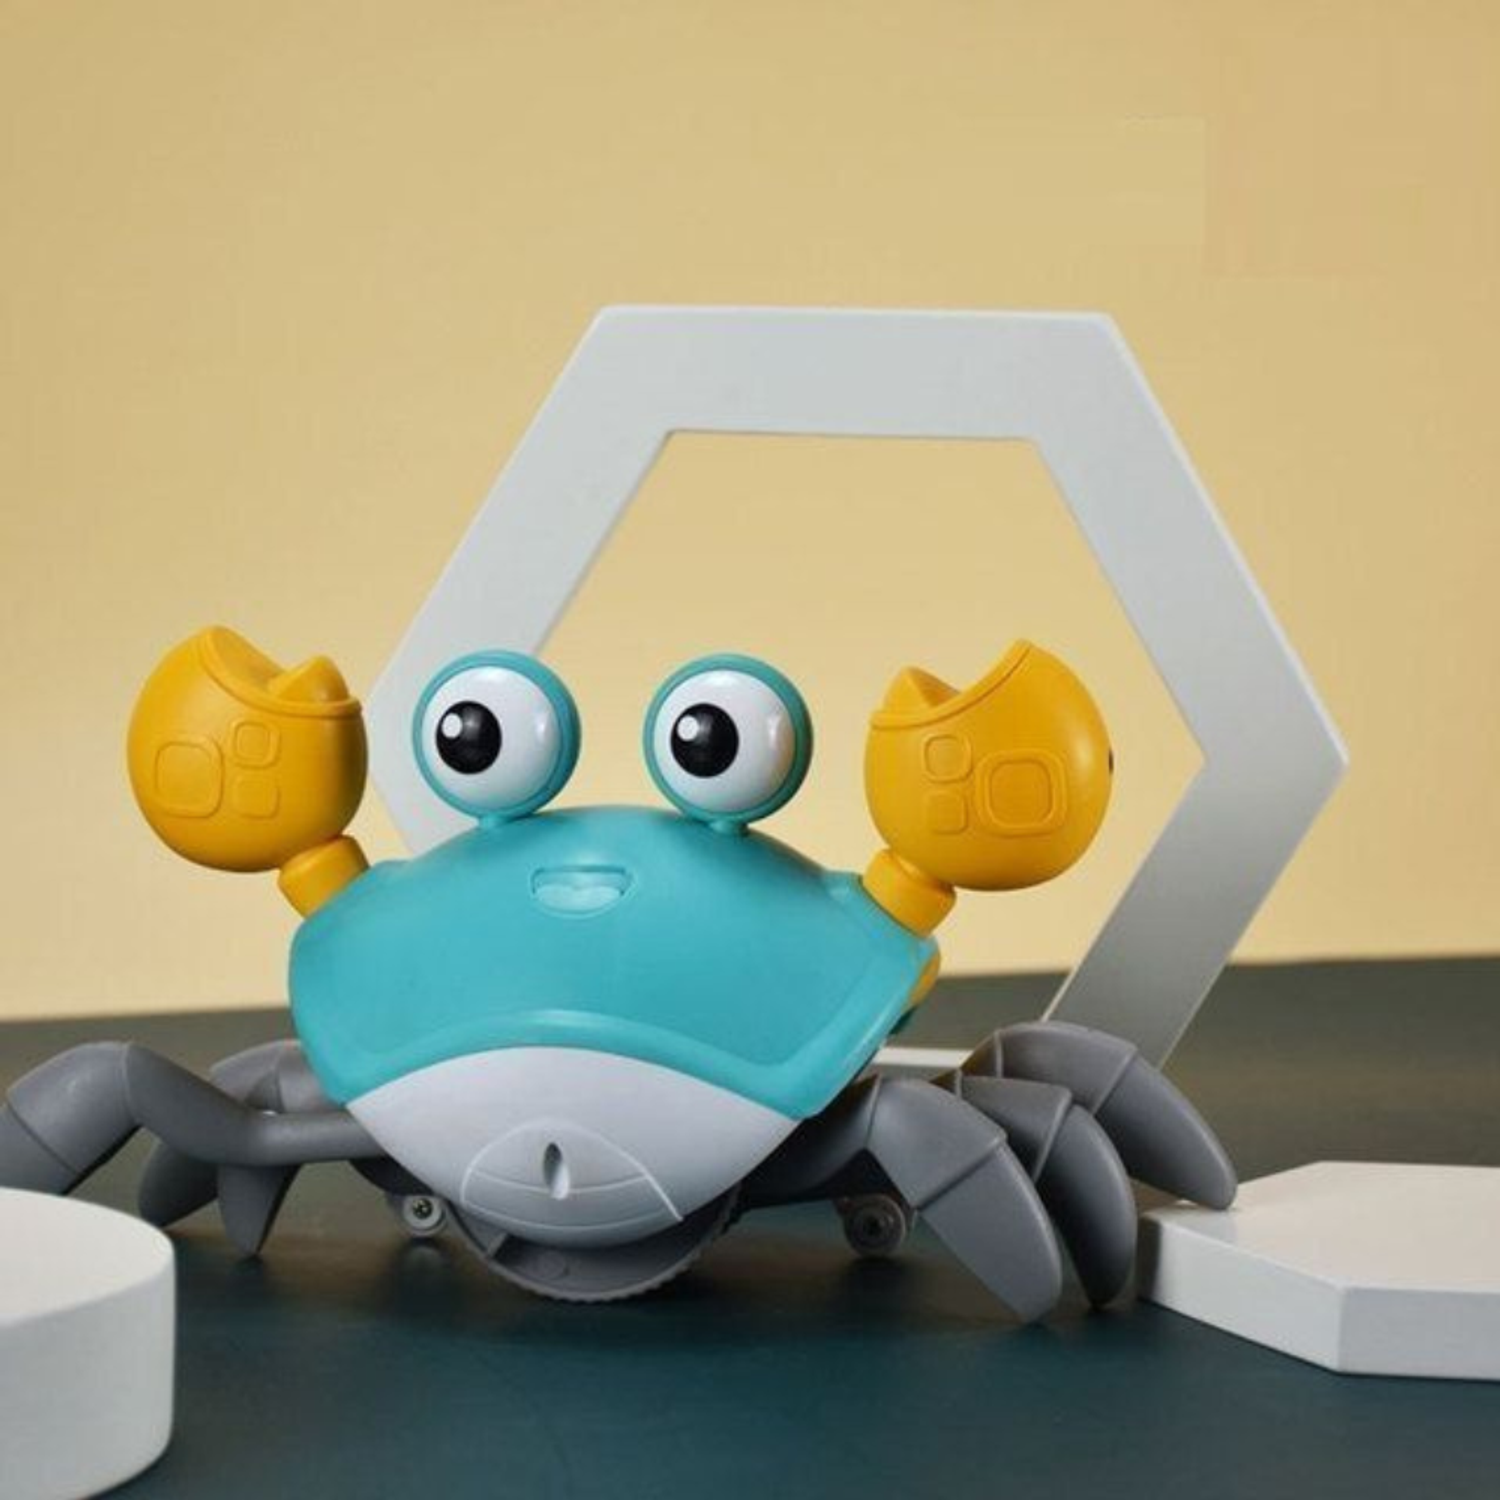 Интерактивная игрушка MagicStyle антистресс робот веселый бегающий краб на аккумуляторе - фото 2